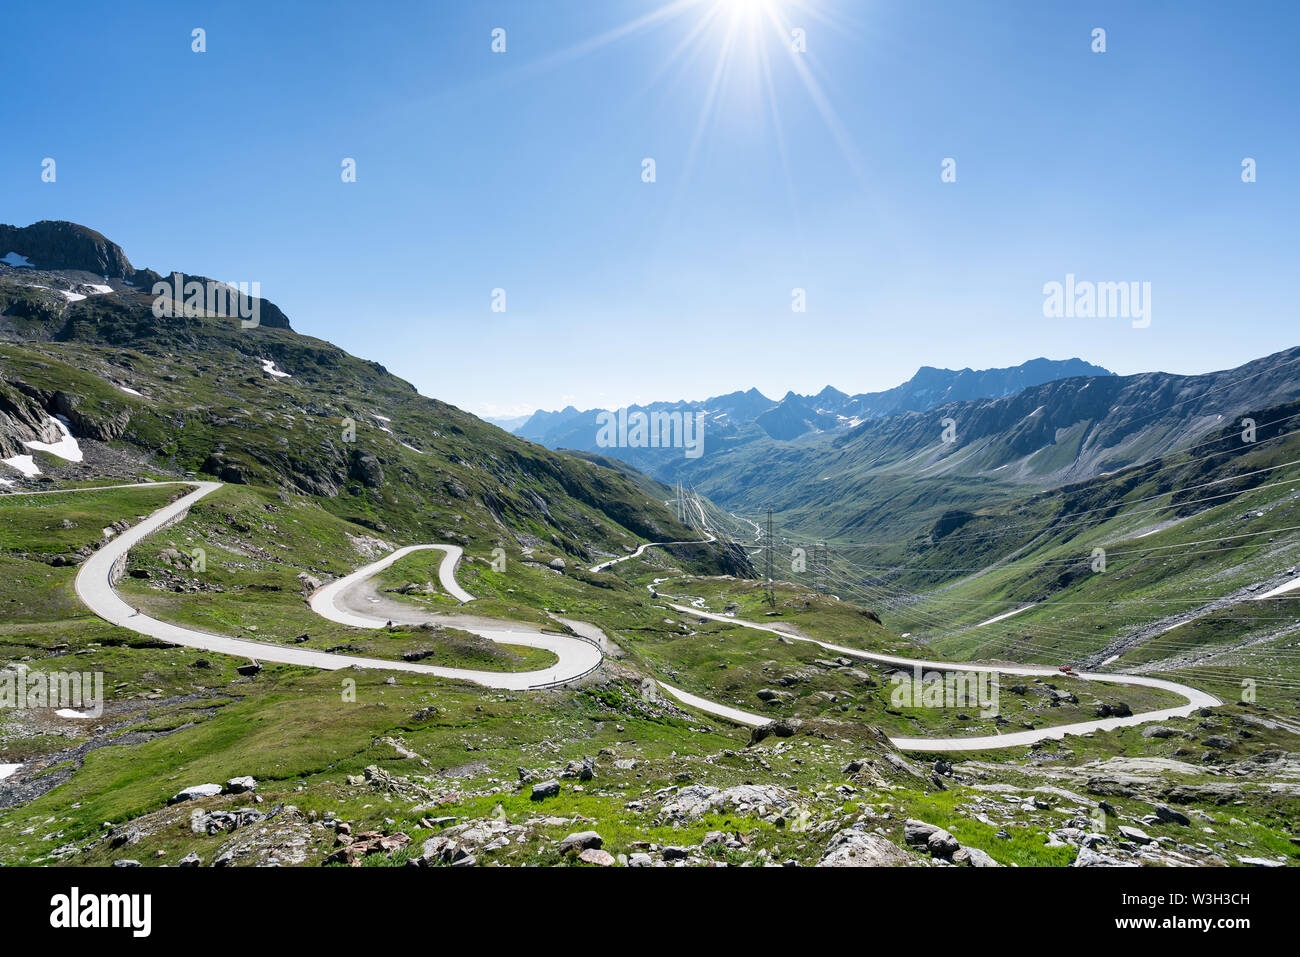 Kurvenreiche Nufenen Pass Straße in der Nähe von Airolo, Schweiz, Alpen  Stockfotografie - Alamy